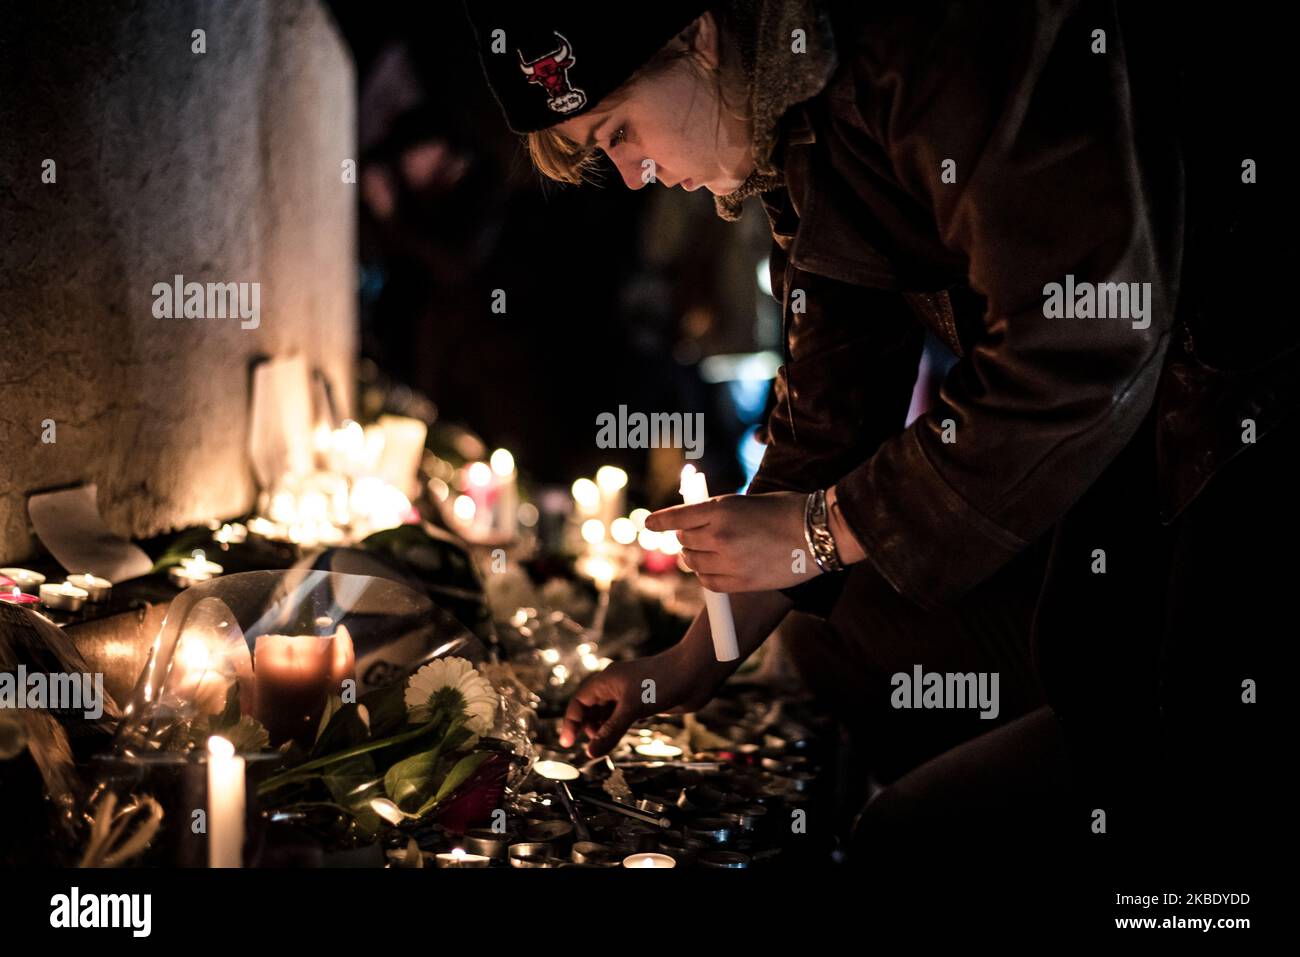 Am 8. Januar 2015, dem Tag nach dem Angriff der Brüder Kouachi auf die Redaktion der satirischen Zeitung Charlie Hebdo, gehen viele junge Menschen auf den Platz, um sich zu sammeln und Kerzen zu legen. Die 12 Tote hinterließ, darunter die Karikaturisten Charb, Cabu, Honoré, Wolinski und Tignous, Figuren der Zeitung, und für die sich Tausende von Parisern weiterhin am Place de la République versammeln, um sich zu sammeln und ihr Gedächtnis zu ehren. (Foto von Samuel Boivin/NurPhoto) Stockfoto